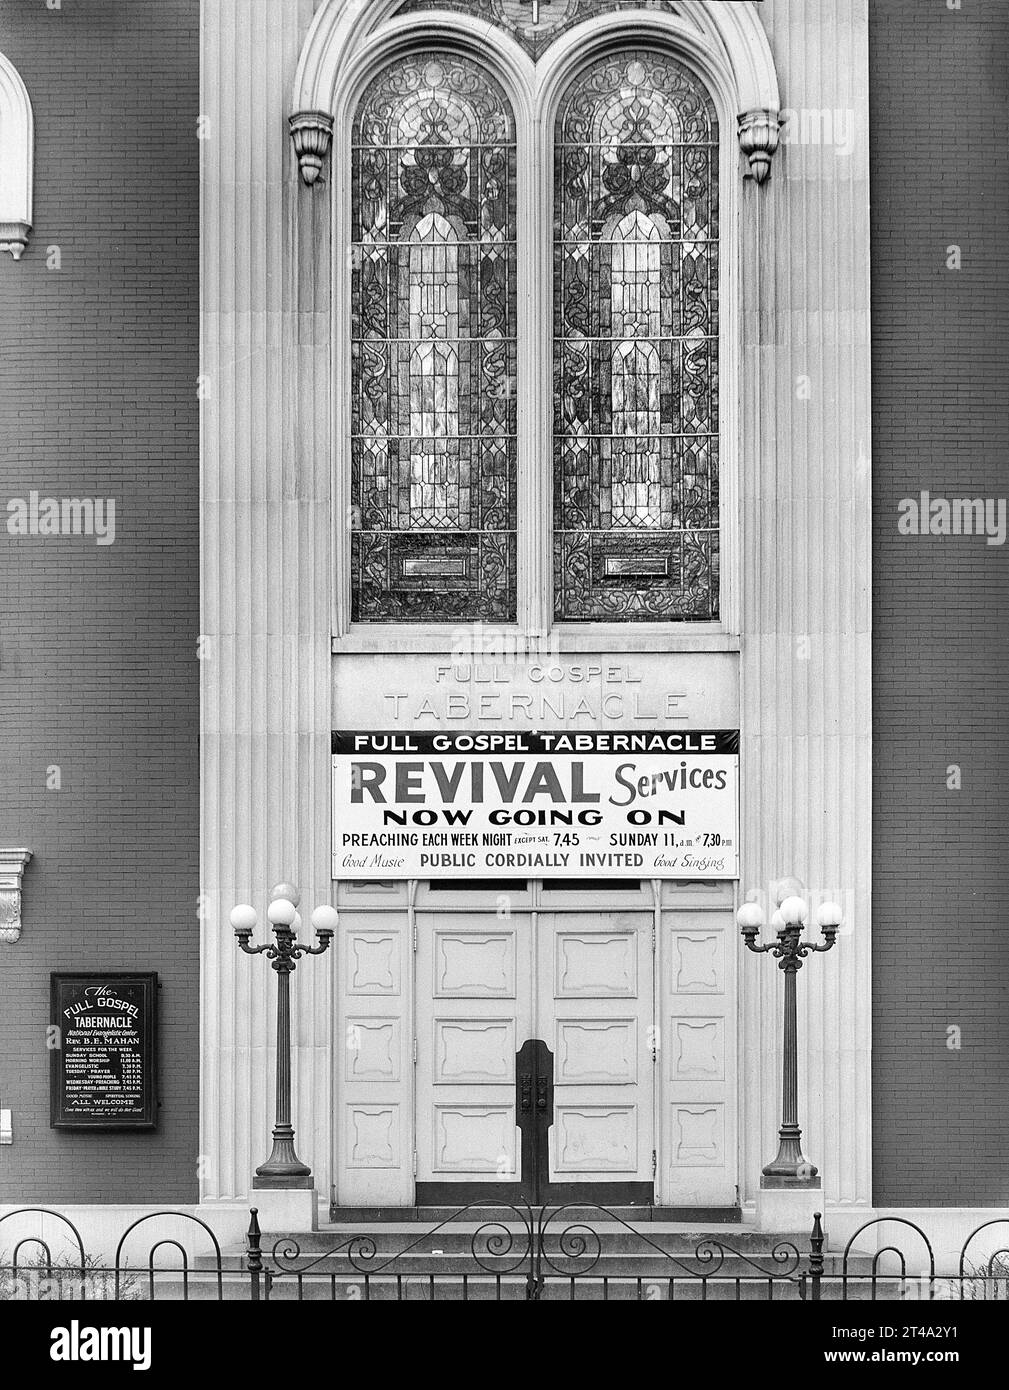 Tabernáculo del Evangelio Completo, Washington, D.C., EE.UU., David Myers, U.S. Farm Security Administration, julio de 1939 Foto de stock